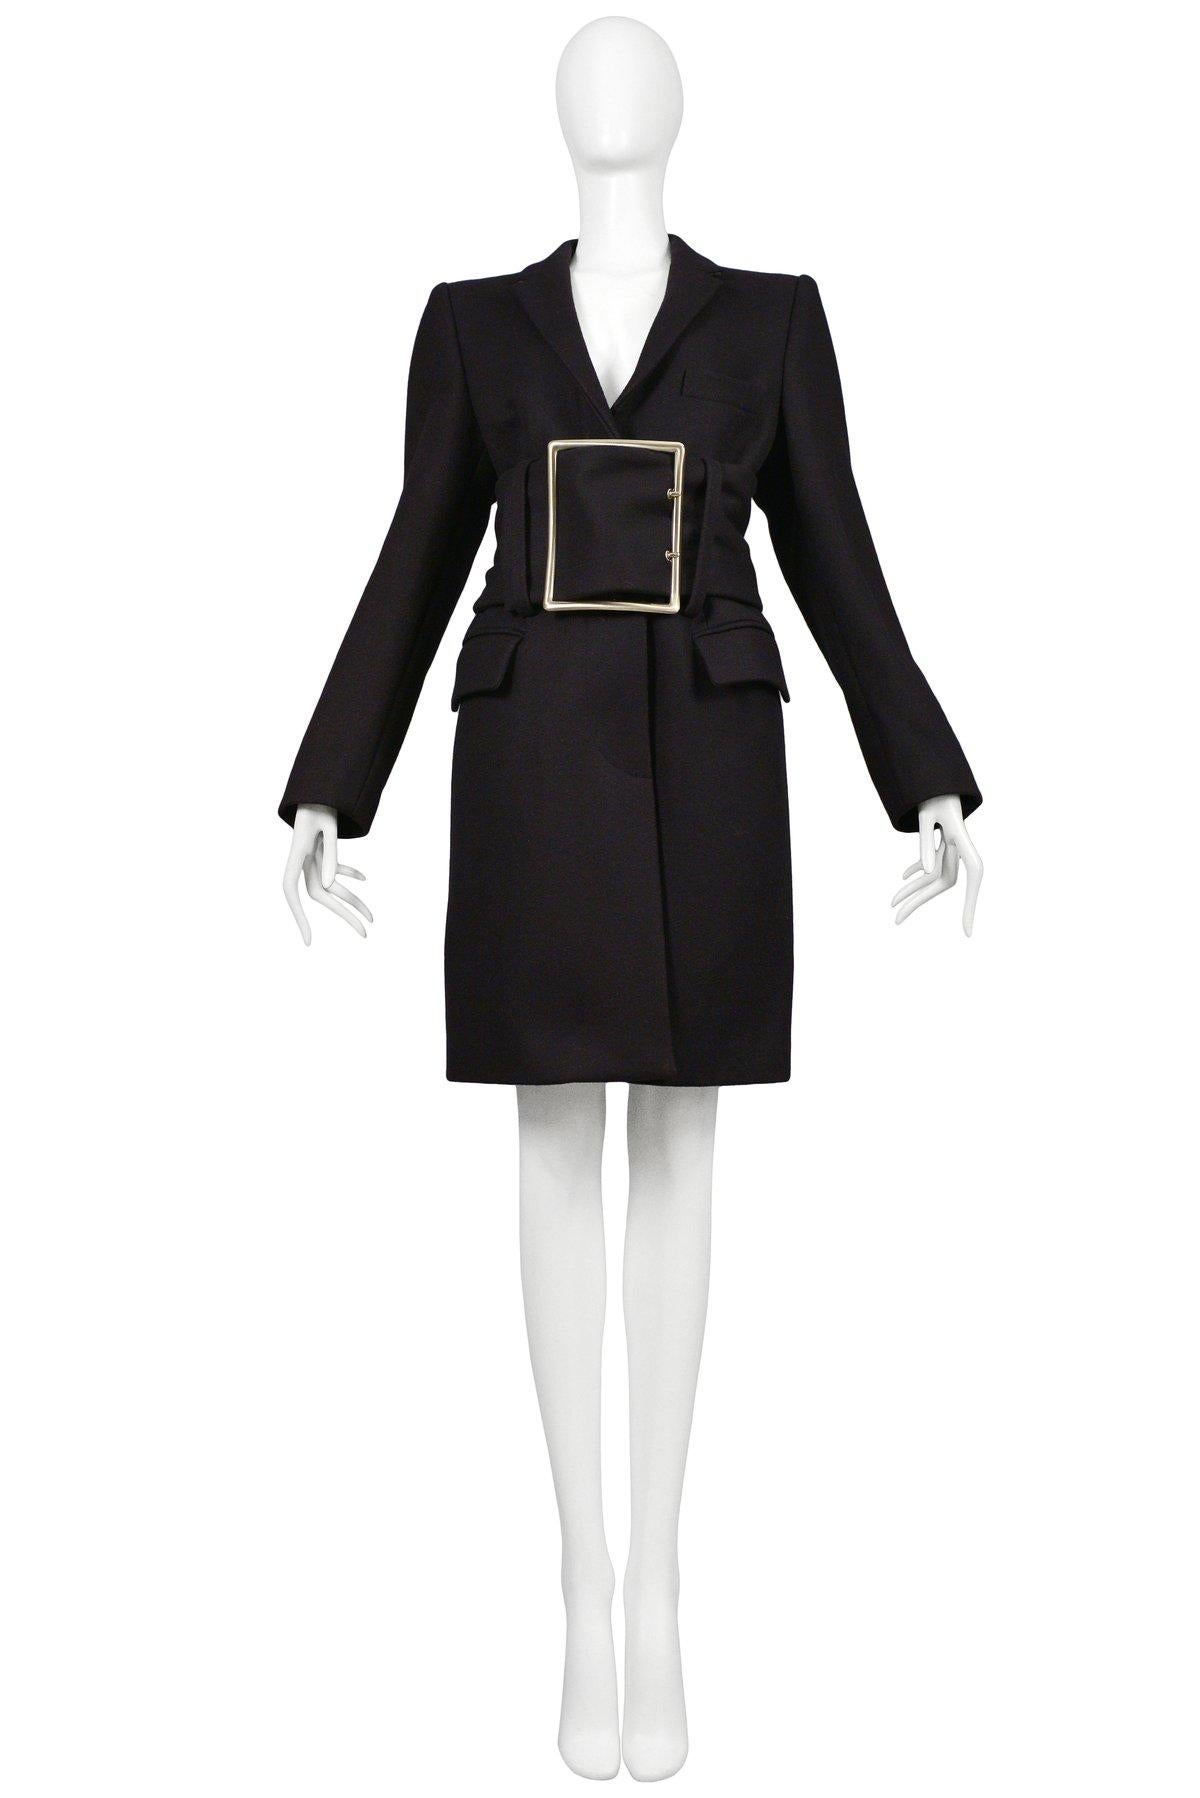 Resurrection Vintage freut sich, einen dunklen Wollmantel von Maison Martin Margiela anbieten zu können. Der Mantel ist mit einer übergroßen, silberfarbenen Gürtelschnalle und einem verstellbaren Gürtel versehen, hat seitliche Vordertaschen und ist